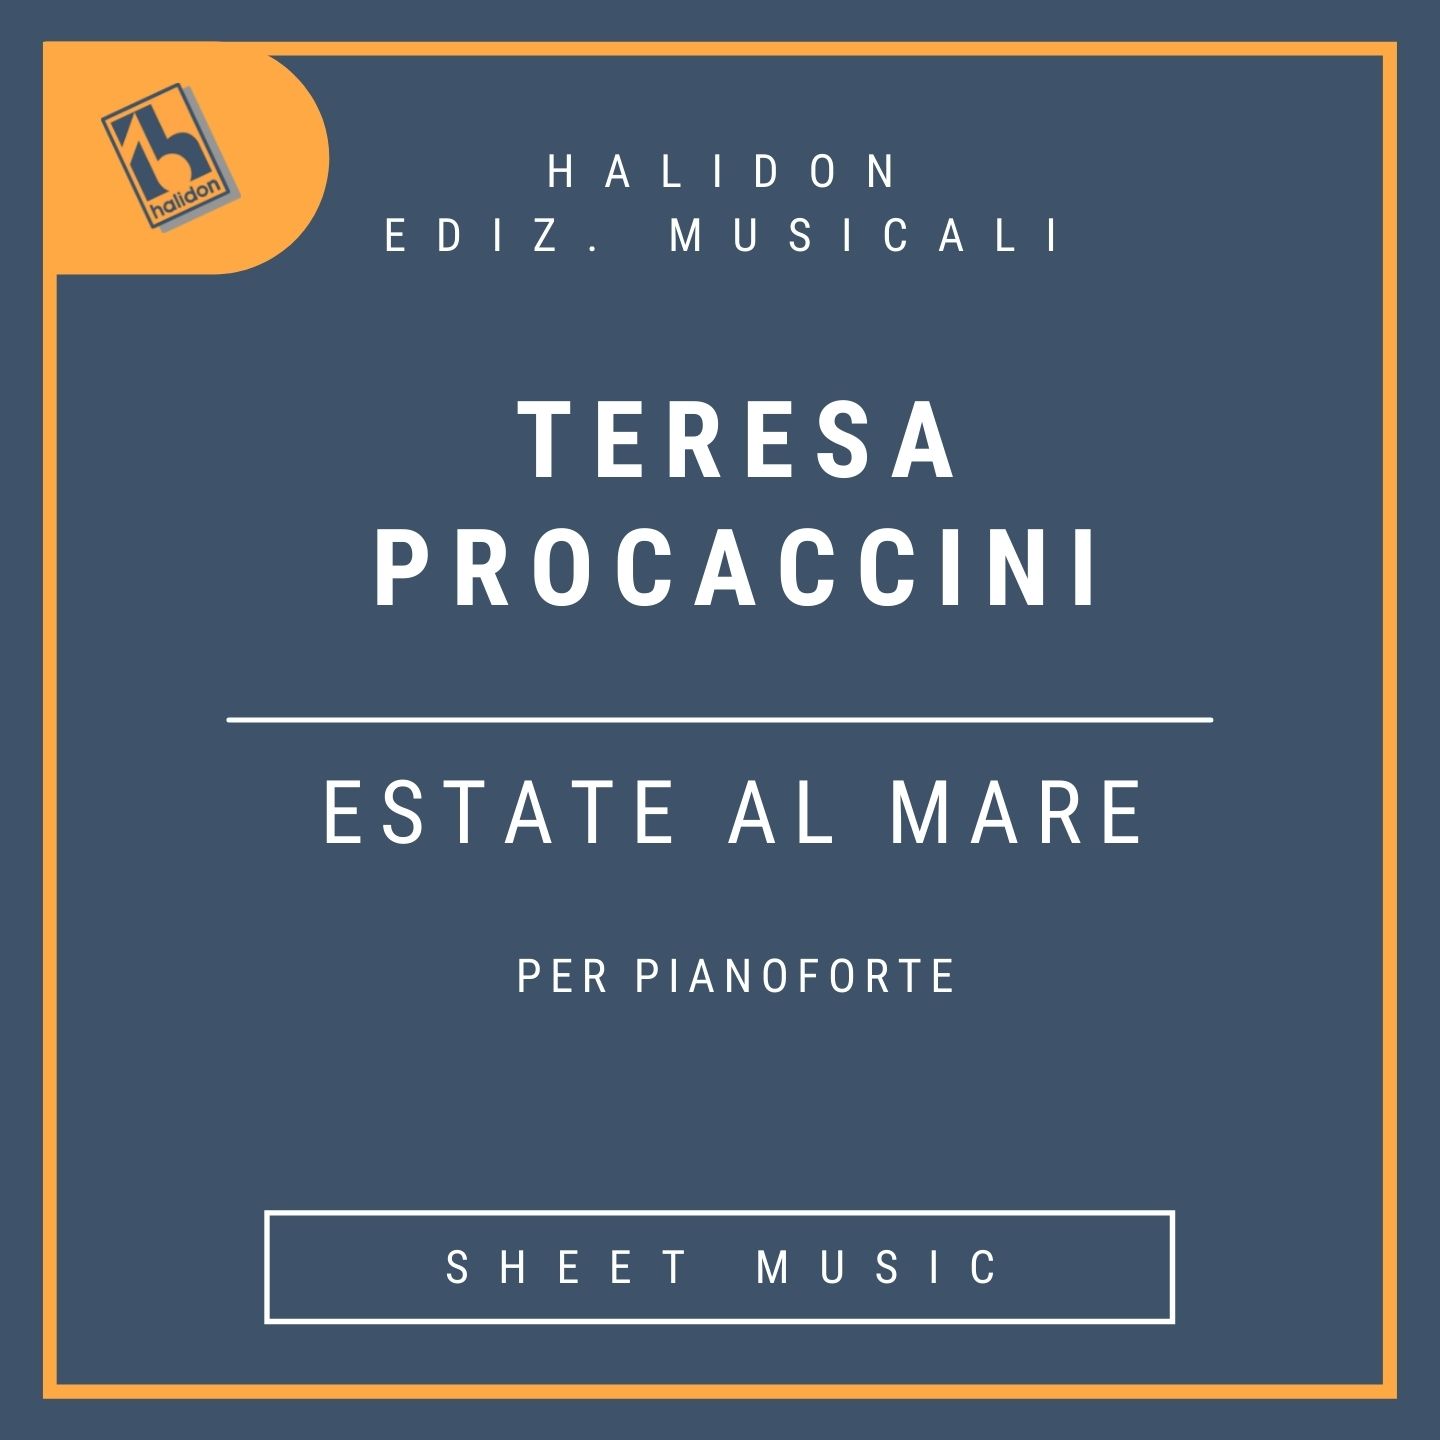 Teresa Procaccini - Estate al mare